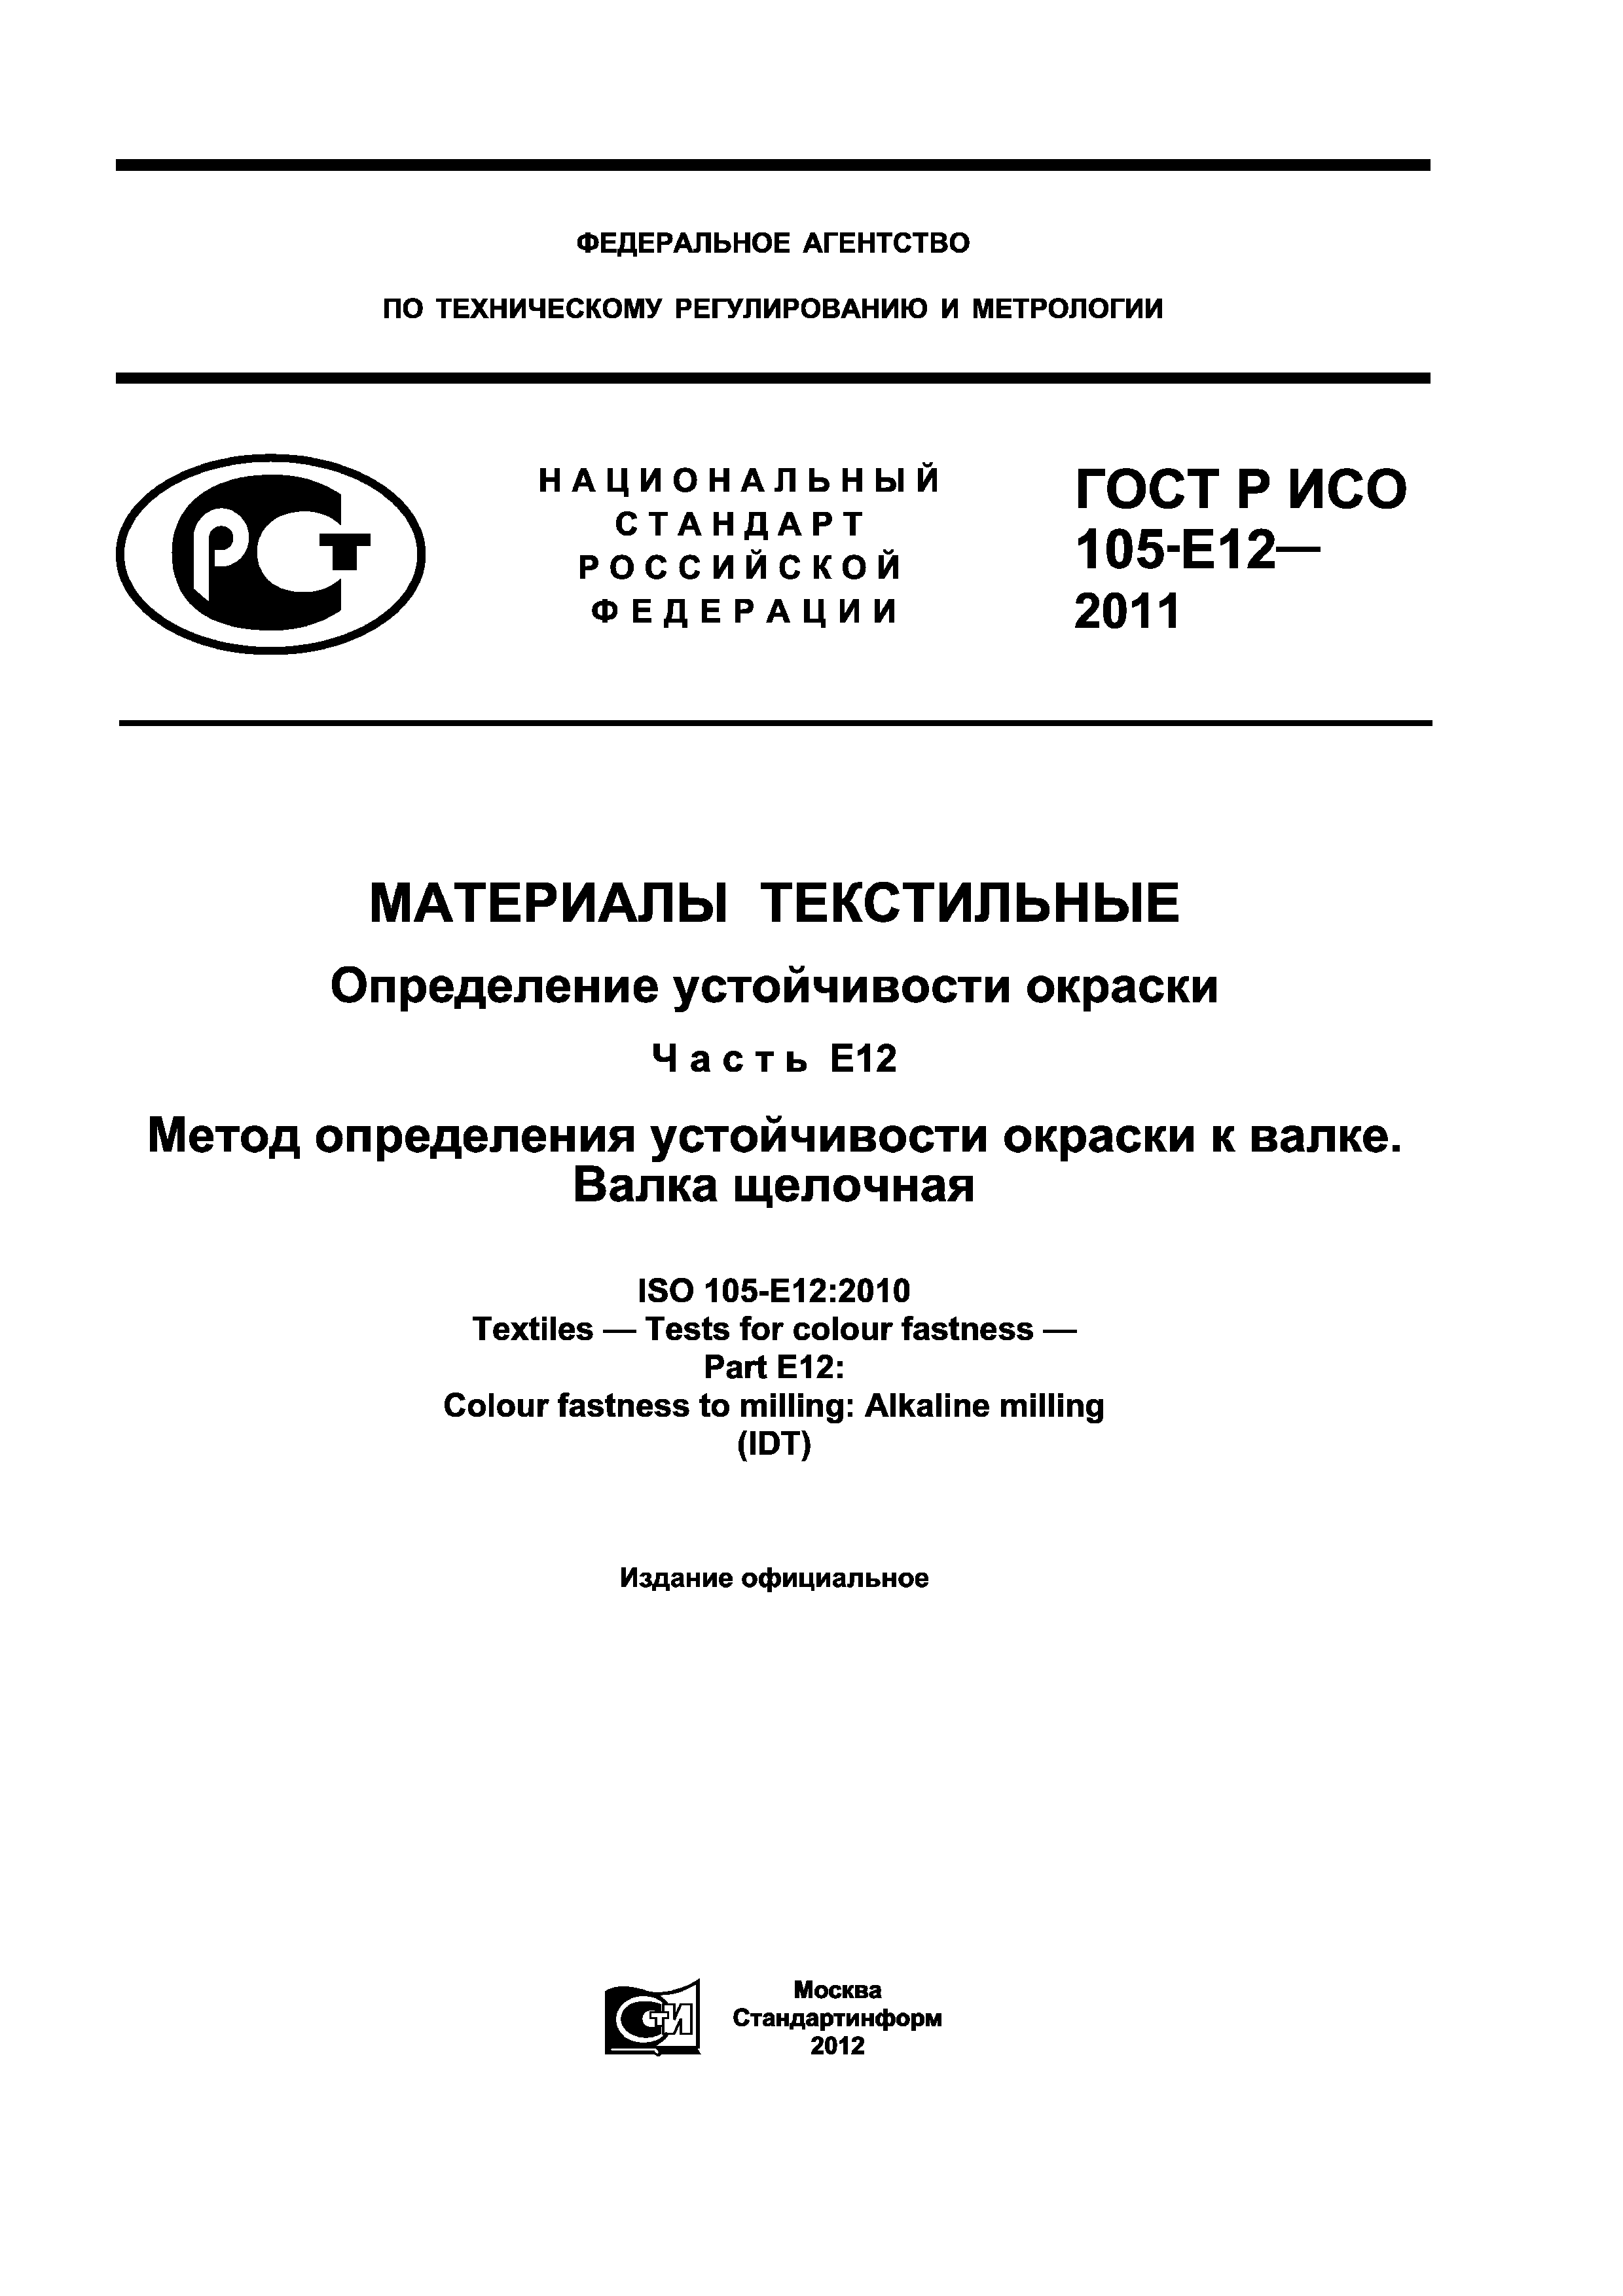 ГОСТ Р ИСО 105-E12-2011